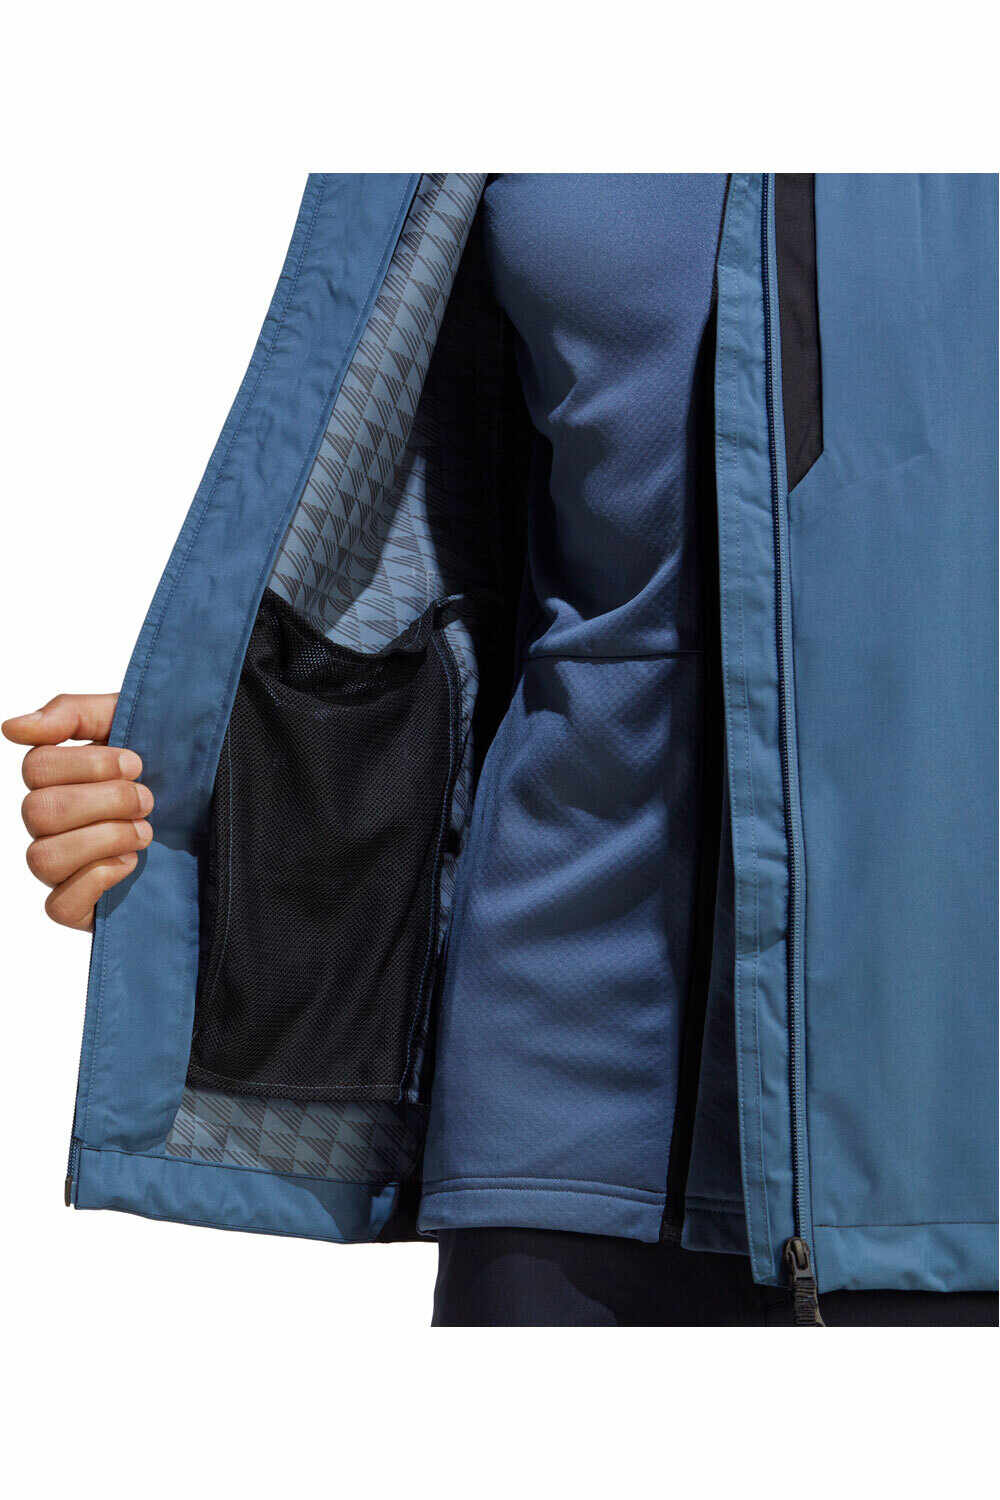 adidas chaqueta impermeable hombre MT RR 2.5L RaiJ 04